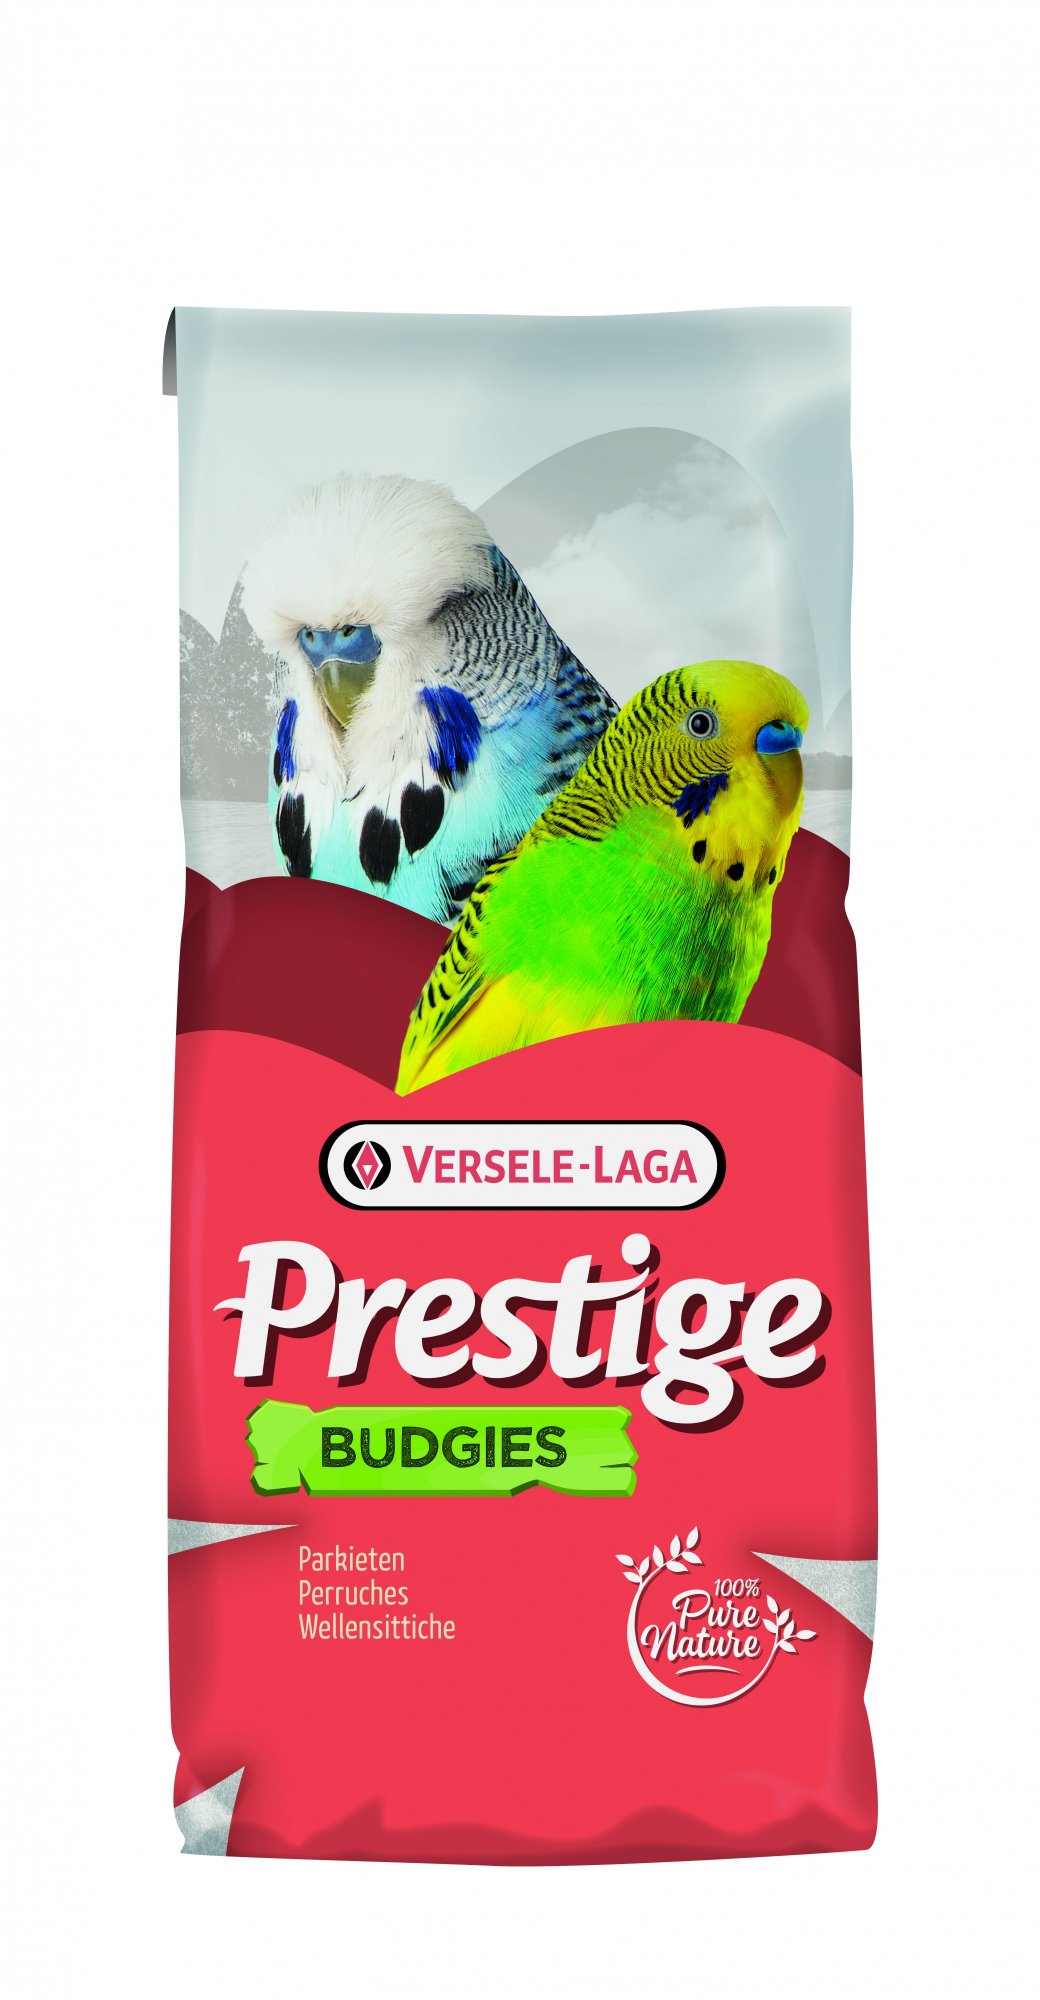 Budgies Prestige für Wellensittiche